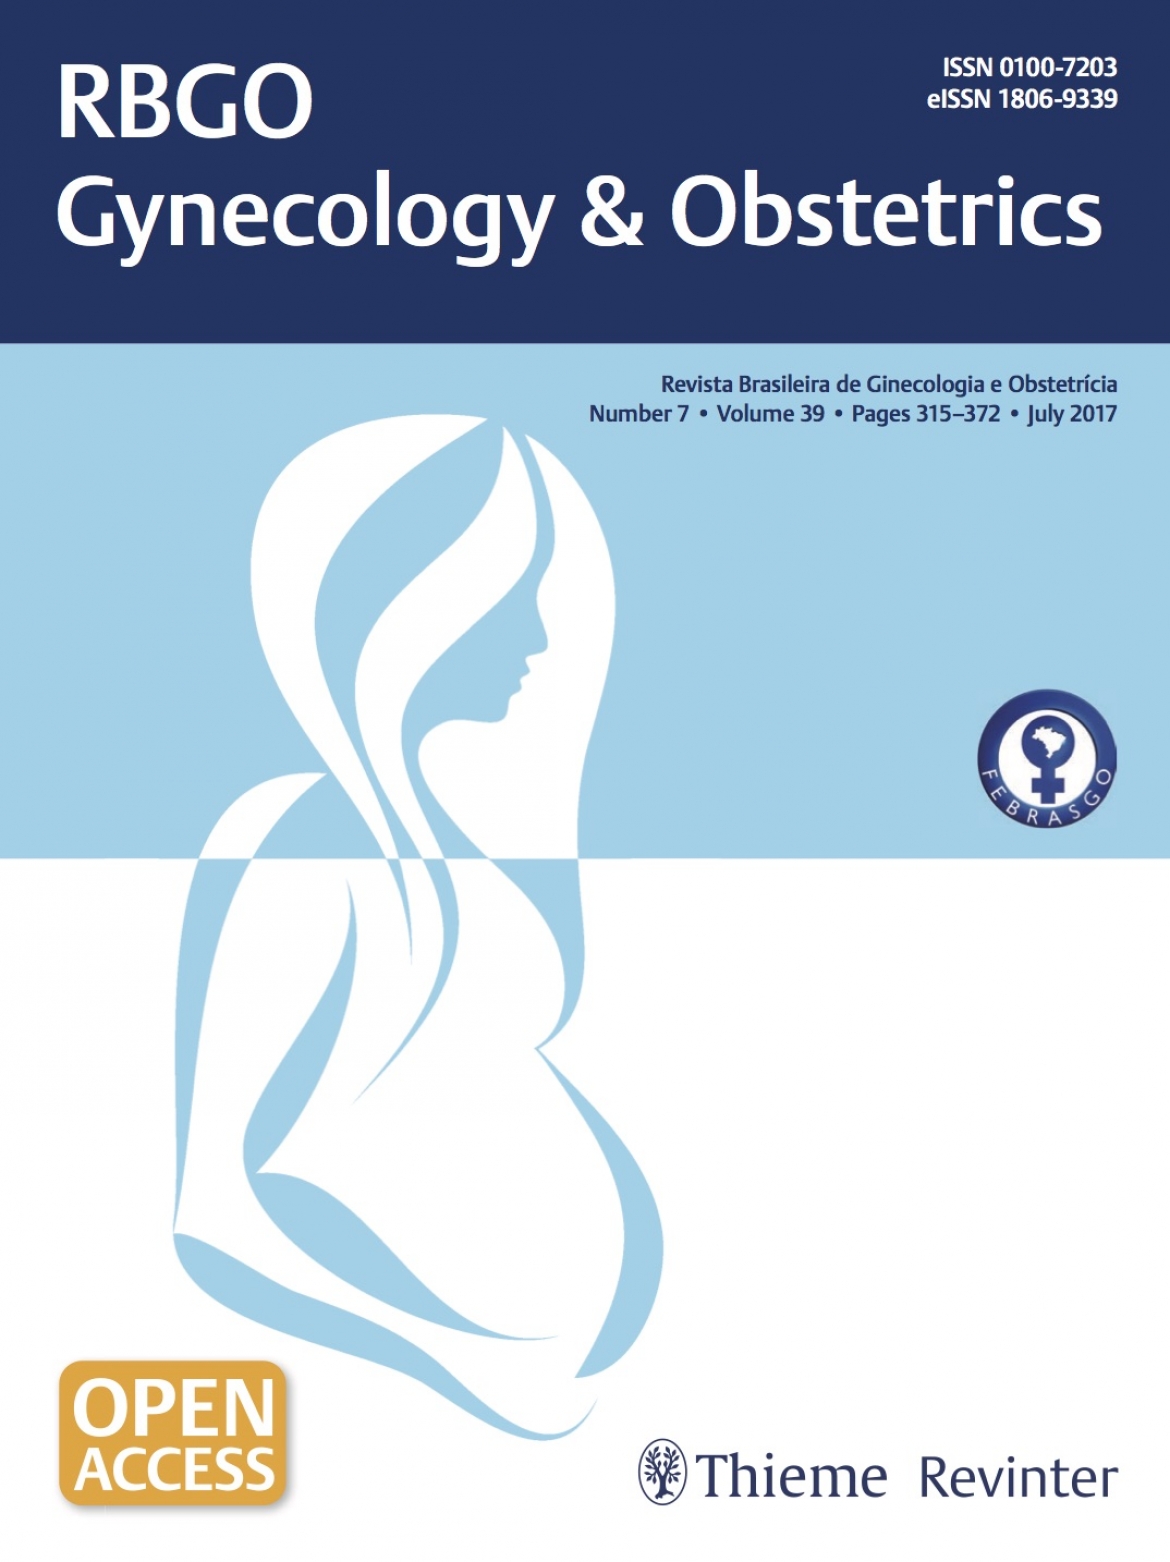 Revista Brasileira de Ginecologia e Obstetrícia – 2017 / Vol. 39 n°7